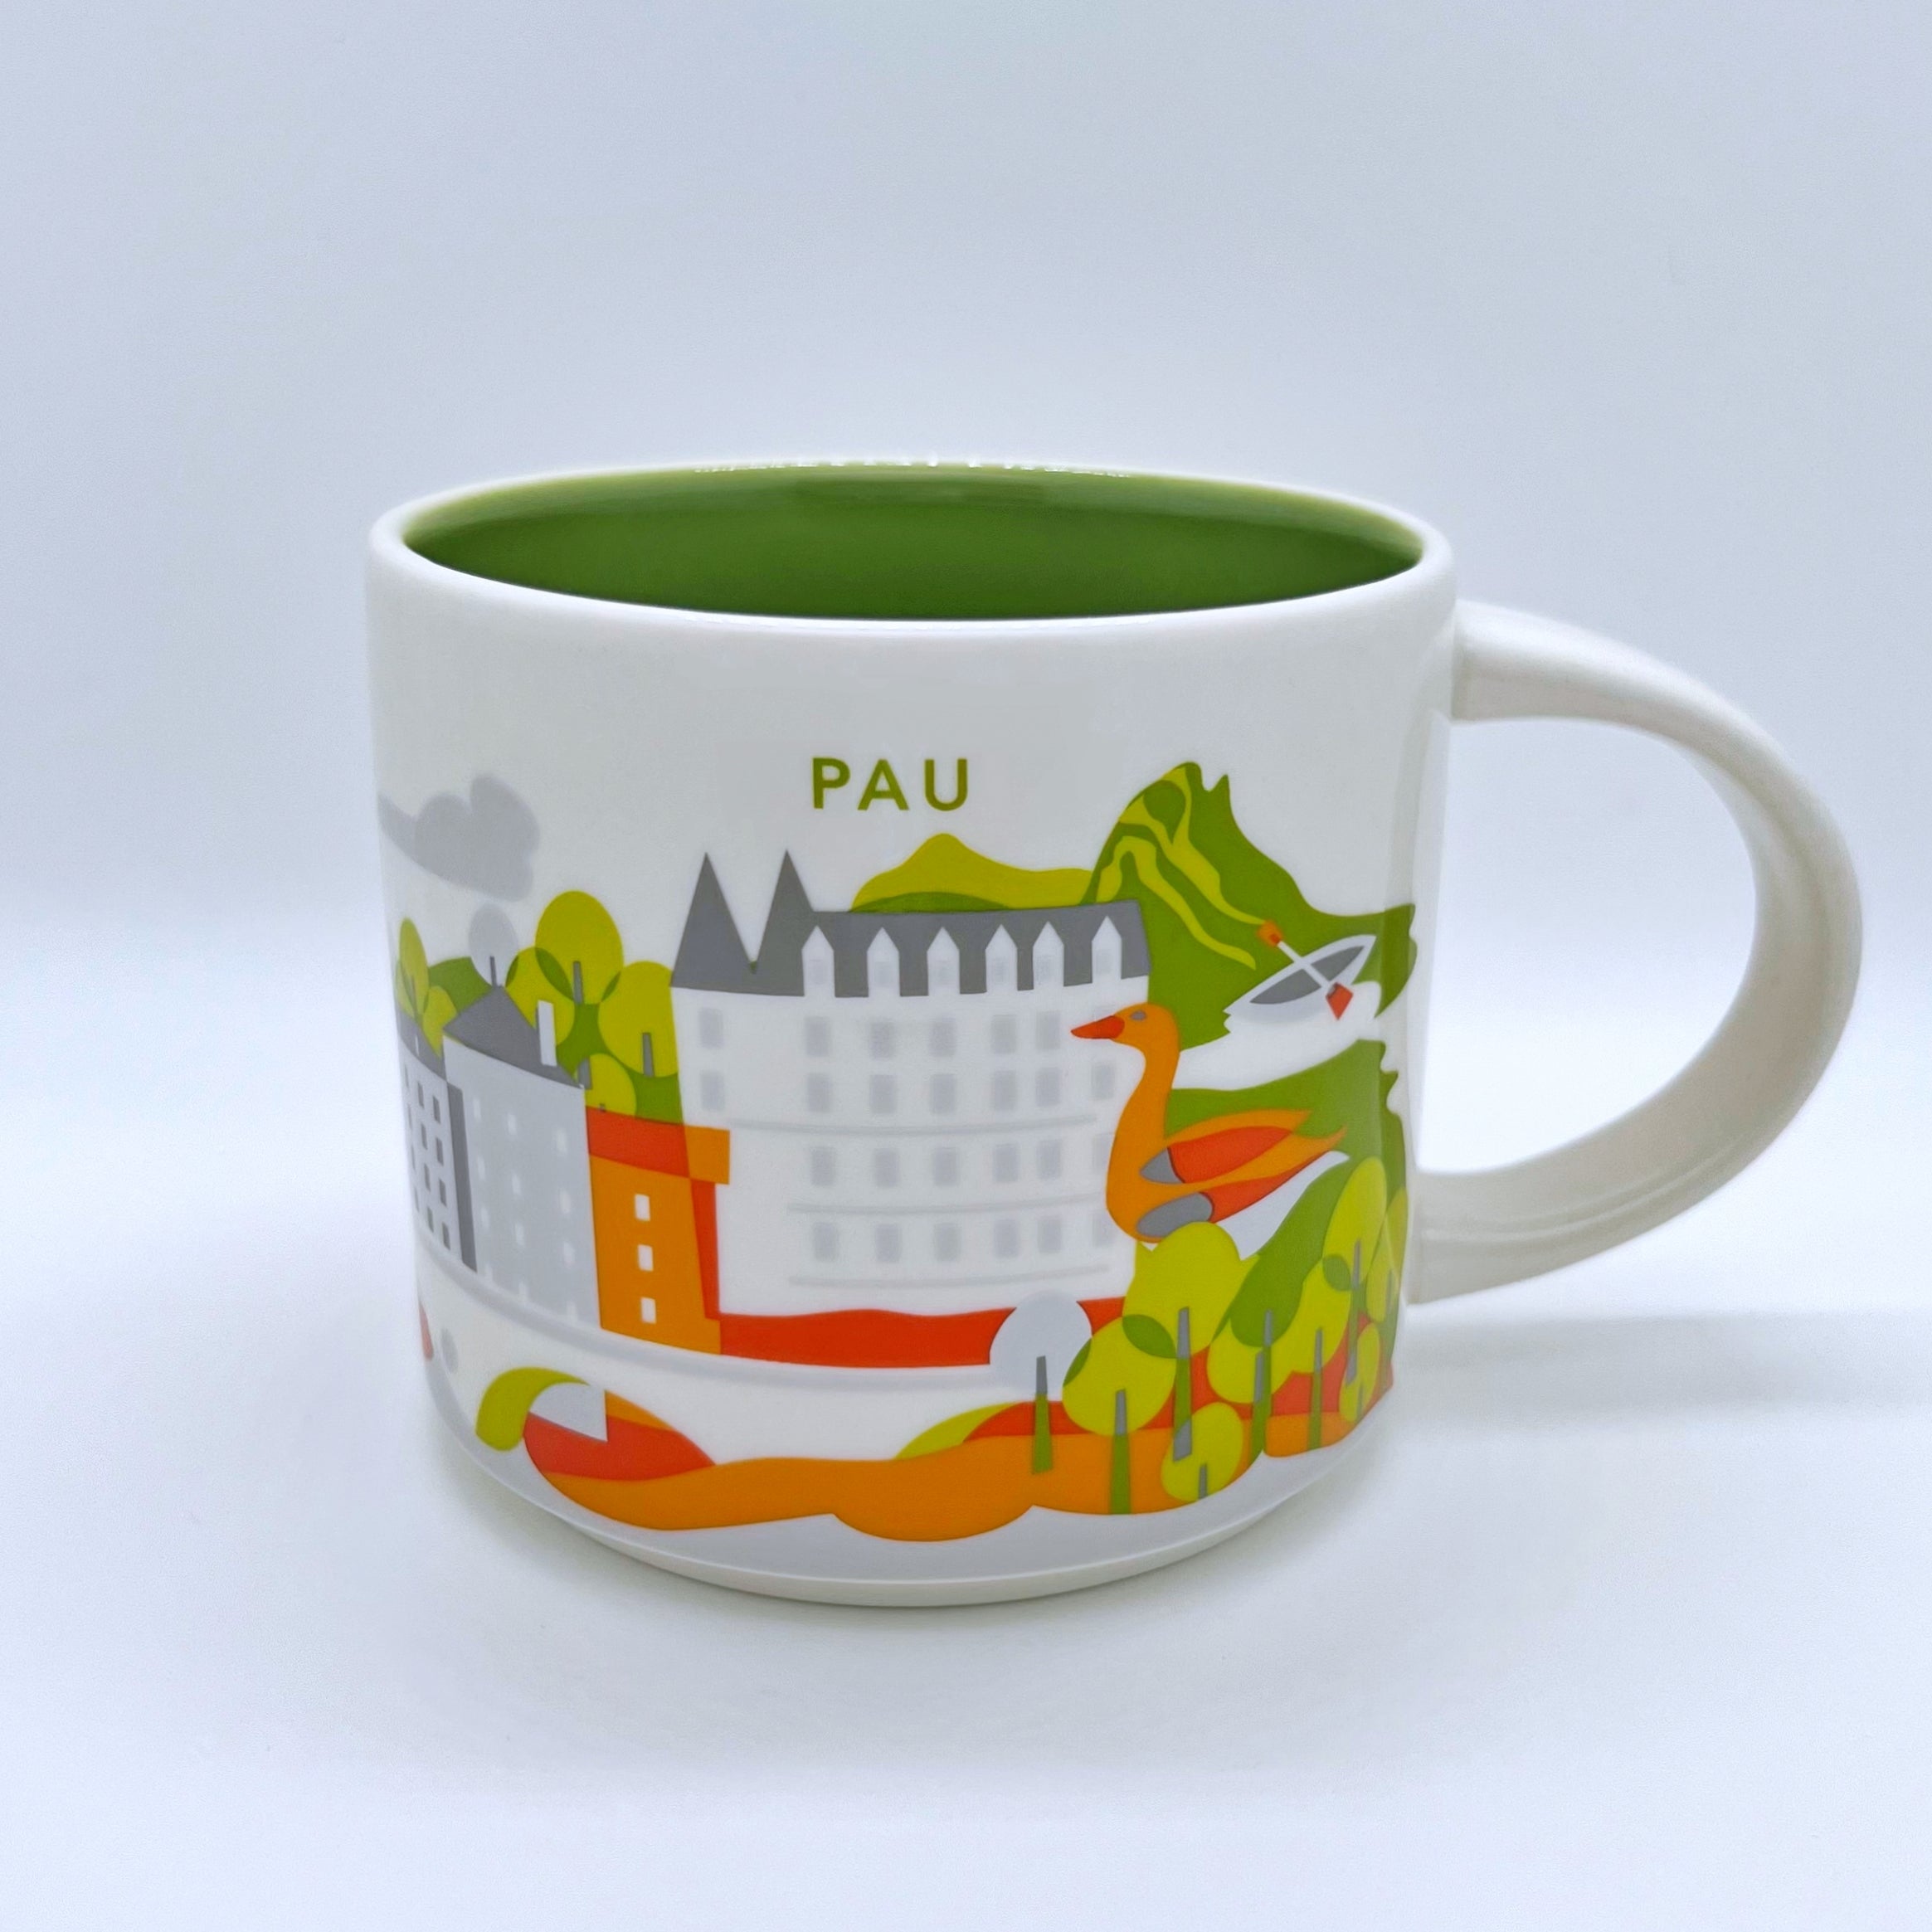 Kaffee Tee und Cappuccino Tasse von Starbucks mit gemalten Bildern aus der Stadt Pau